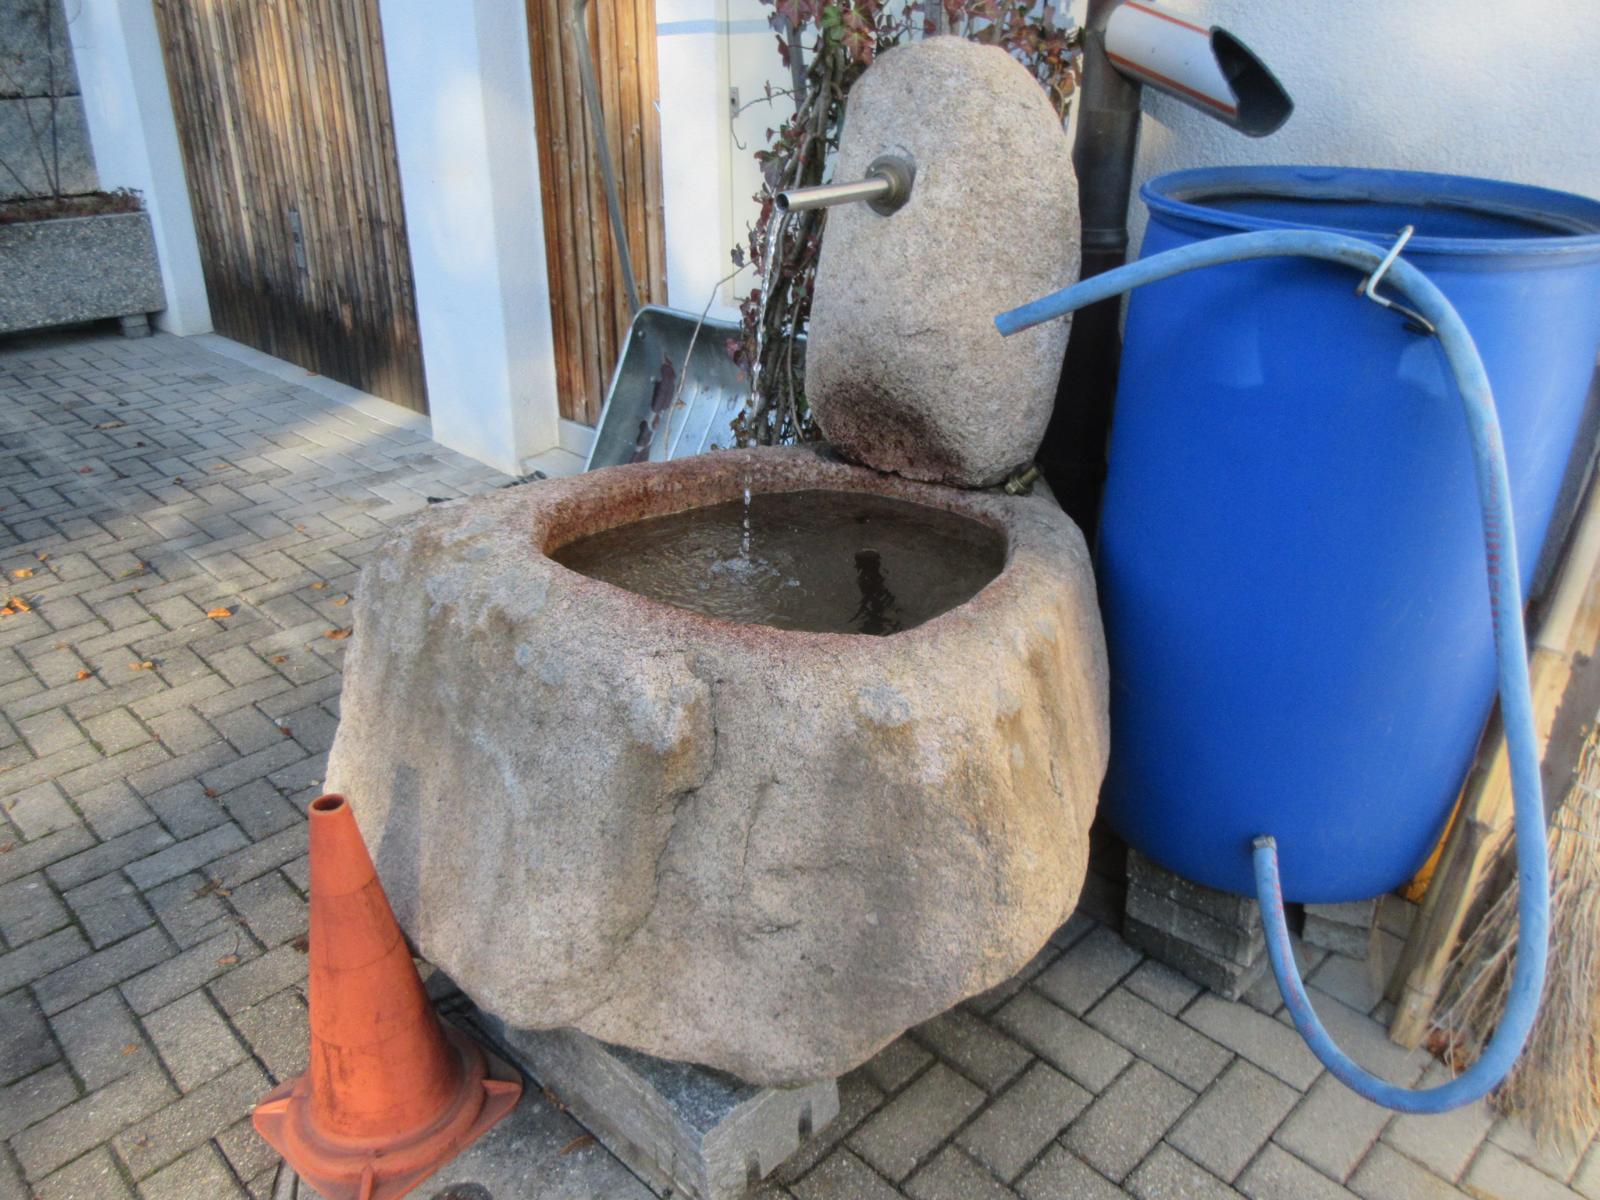 Hauptstrasse 60 *** 21. Jh. *** Granit *** Granit *** Regenwasser mit Umwälzpumpe betrieben. Gemäss Aussage des Eigentümers wurde der Brunnen für ein Betriebsjubiläum der Rivella AG erstellt.